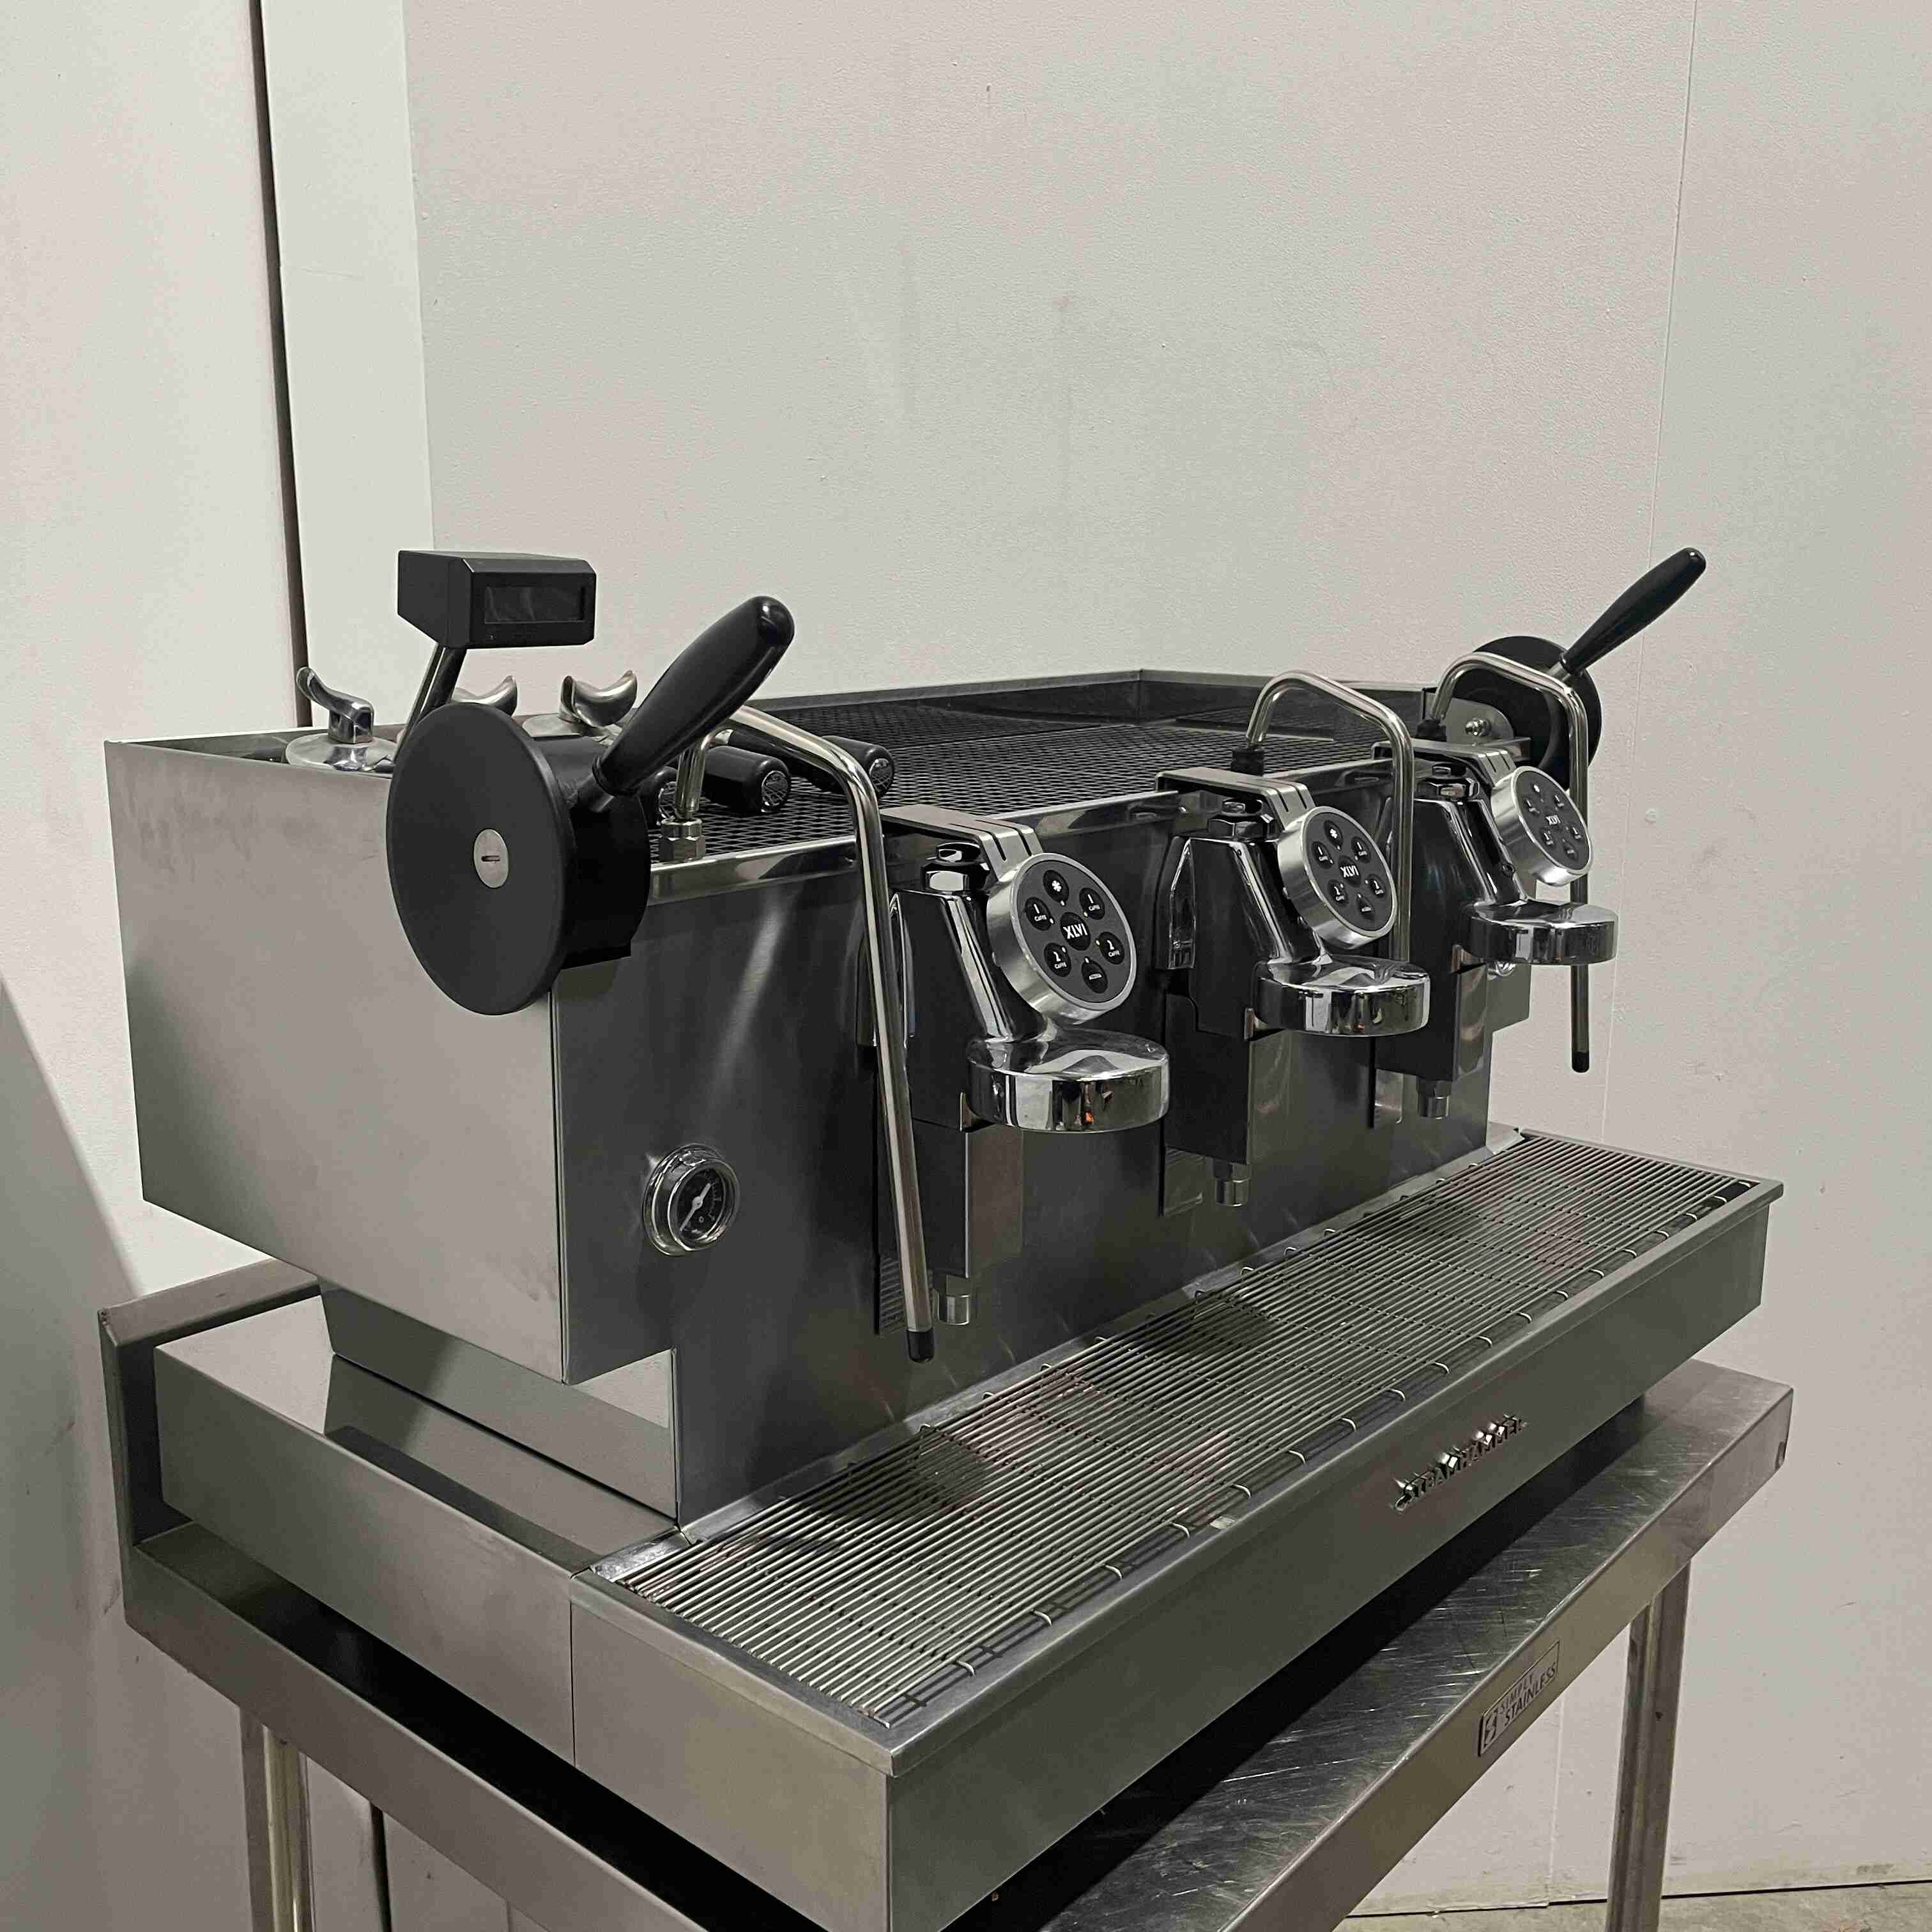 Thumbnail - XLVI Steamhammer 3 Group Coffee Machine